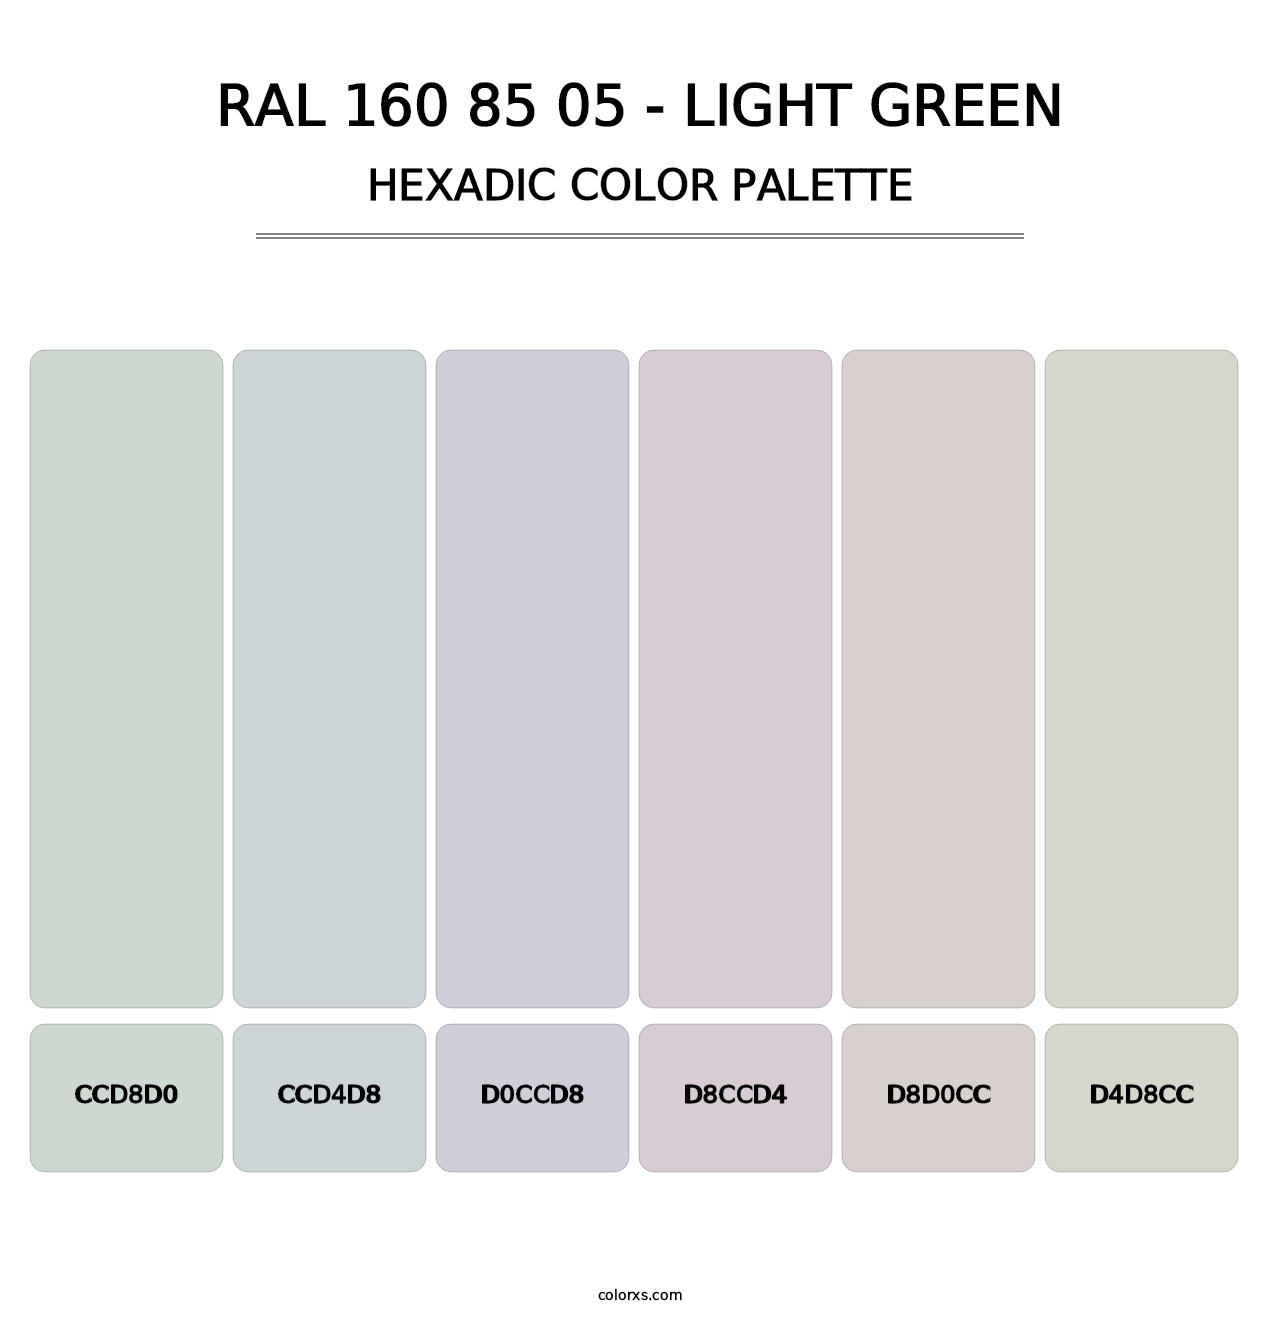 RAL 160 85 05 - Light Green - Hexadic Color Palette